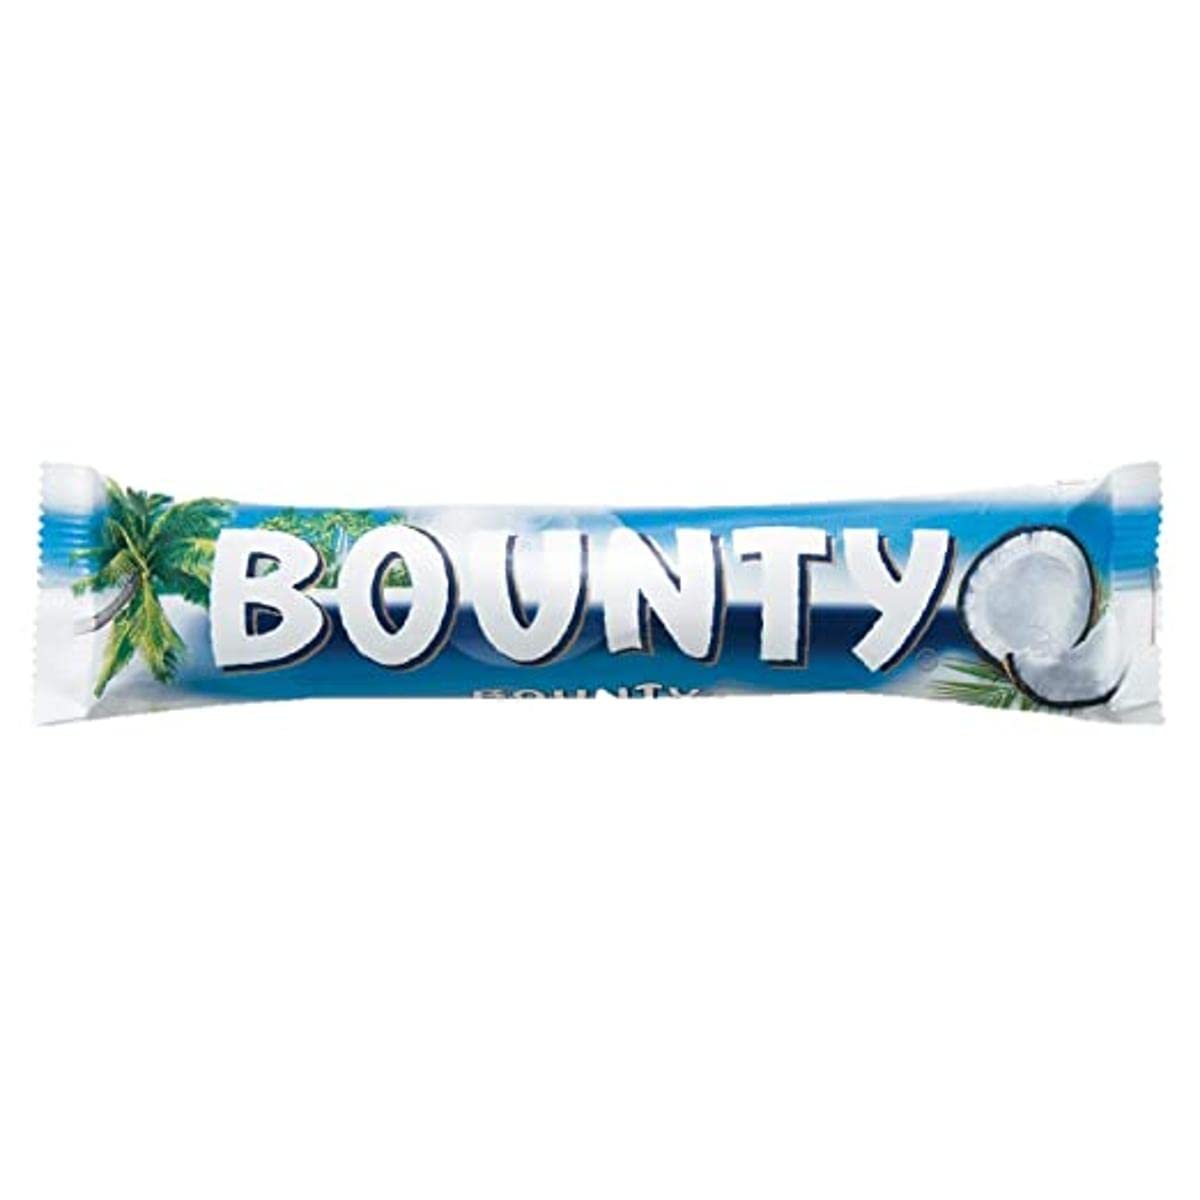 Bounty 57g. +70